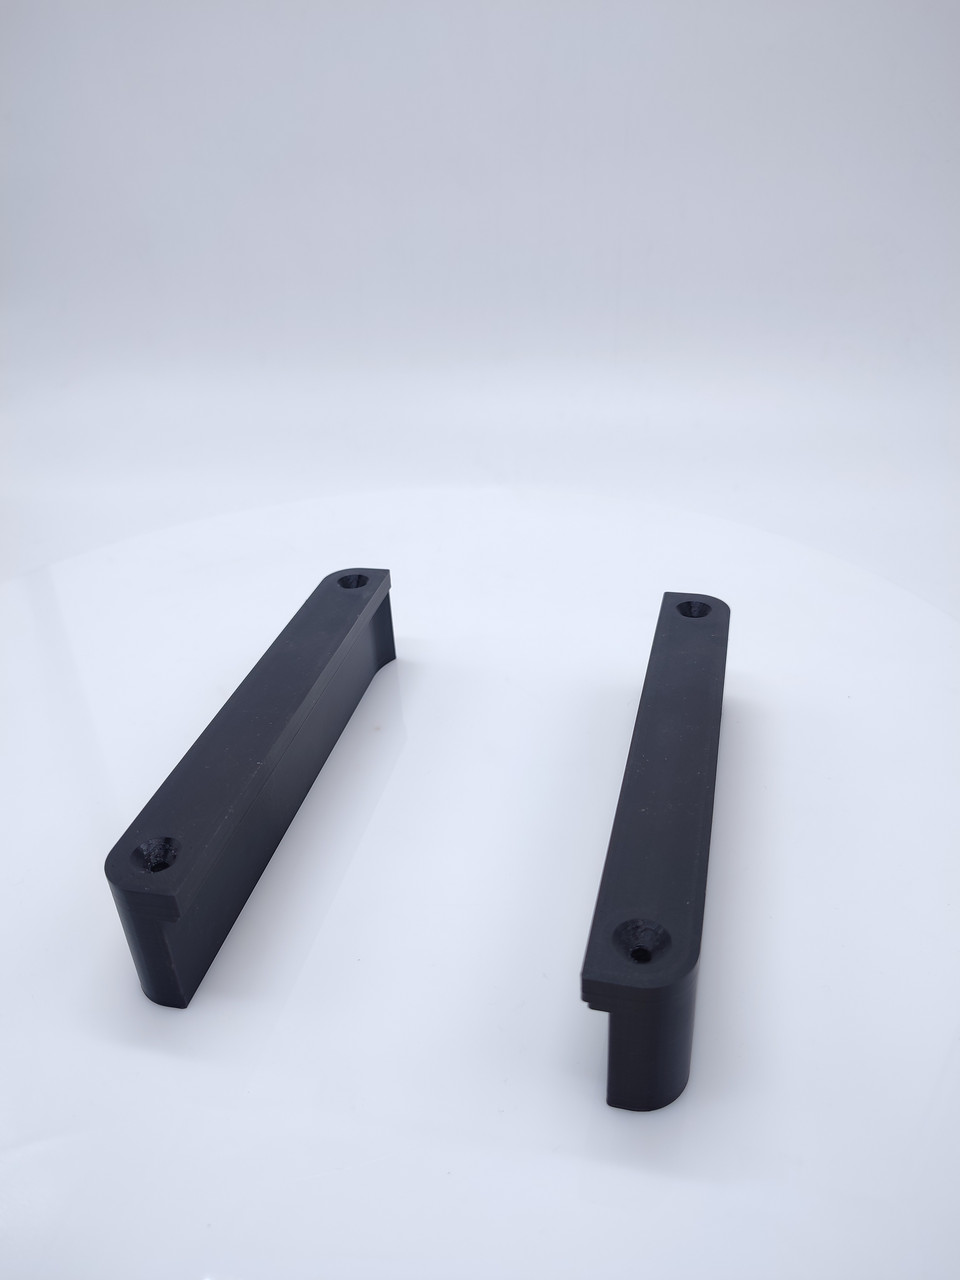 Кріплення для Mac mini в стилі висувної шухляди настільне пластикове, тримач для мак міні чорний